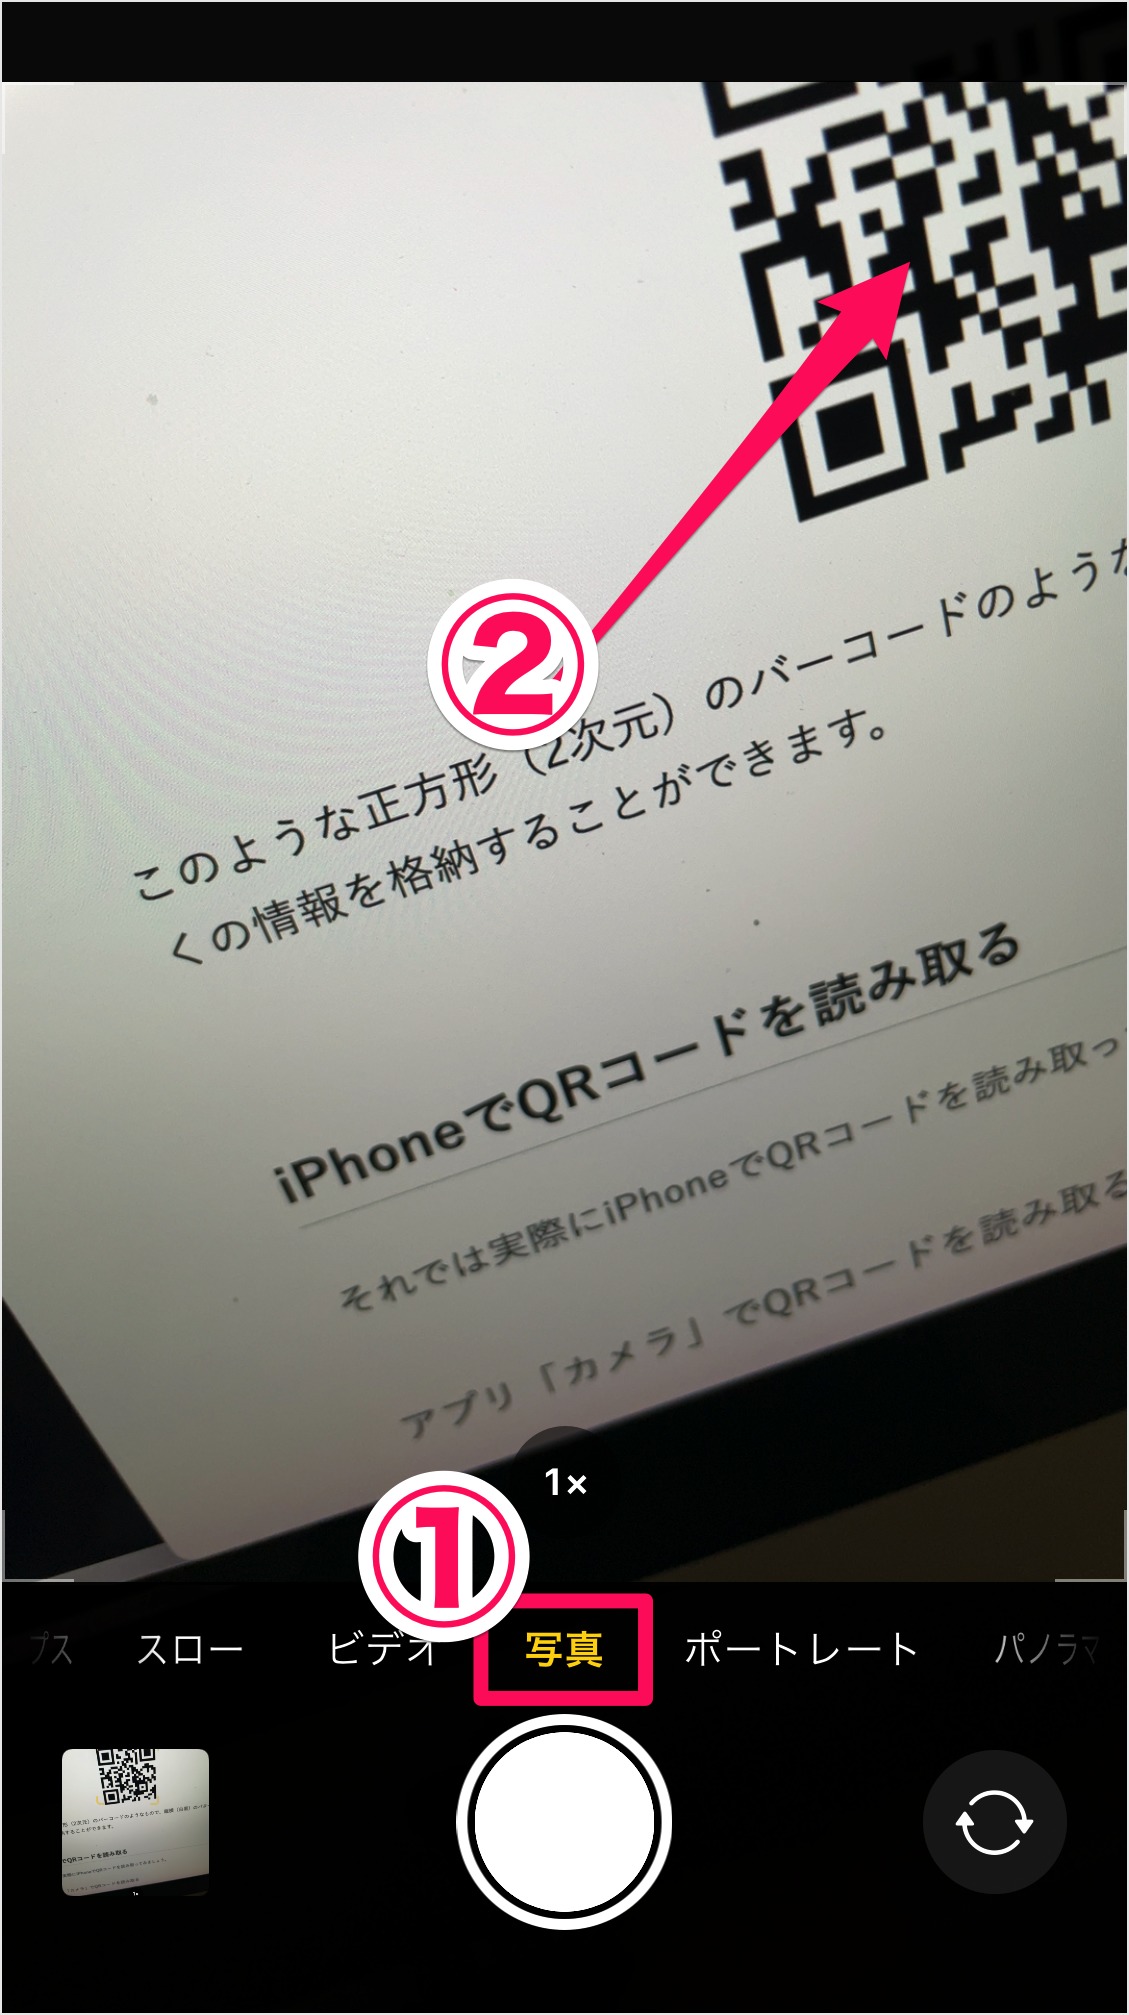 Qrコードを読み取る方法 Iphone Android スマホ Pc設定のカルマ 9025